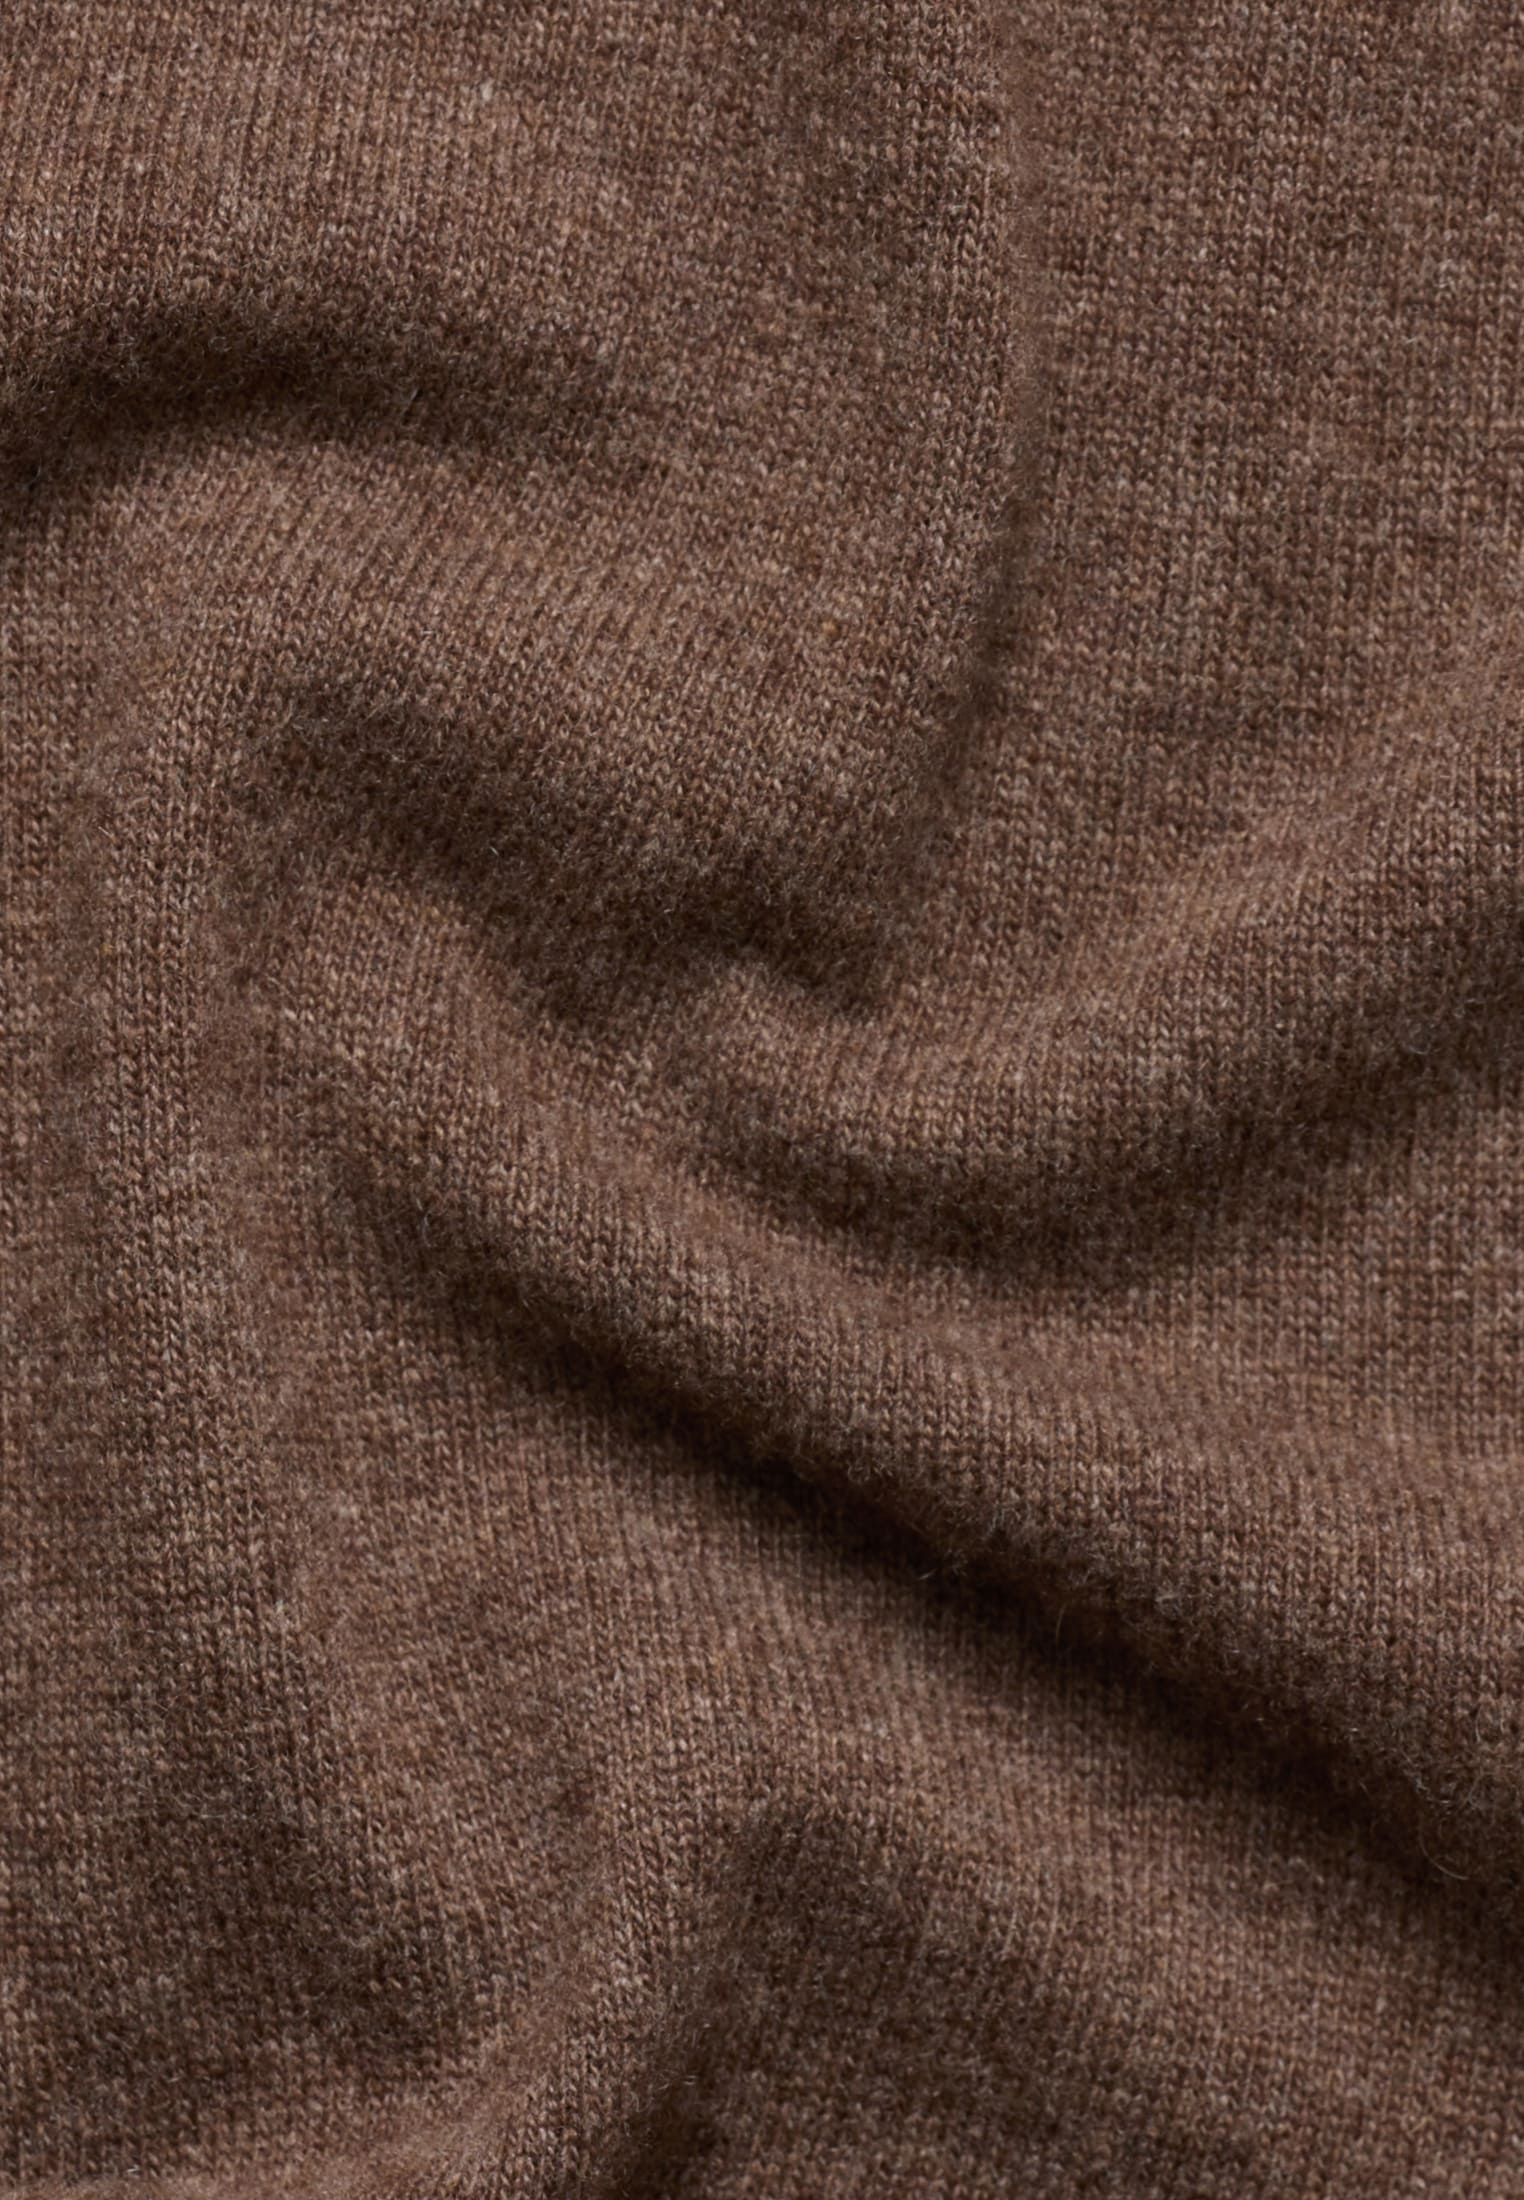 dark | dark Knitted brown in | plain 2XL brown 2KN00093-02-92-2XL cardigan |